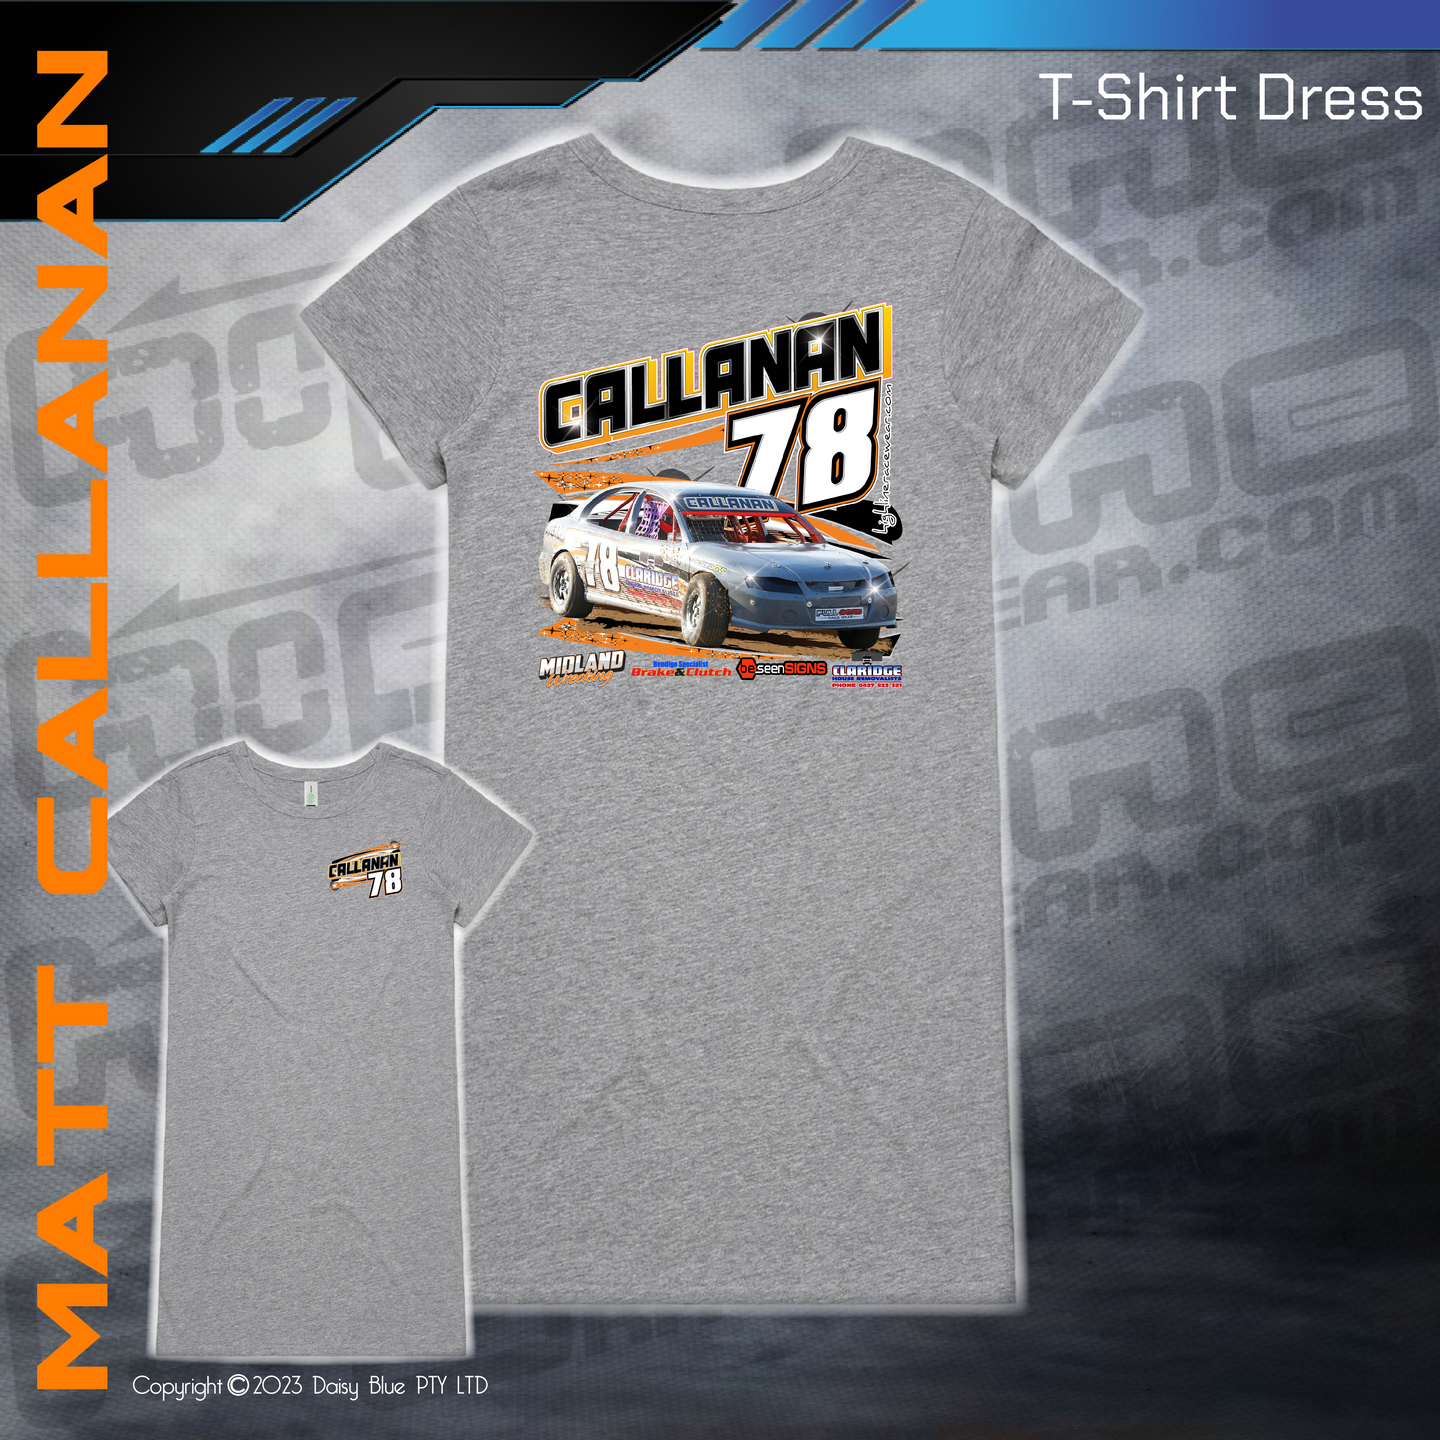 T-Shirt Dress - Matthew Callanan